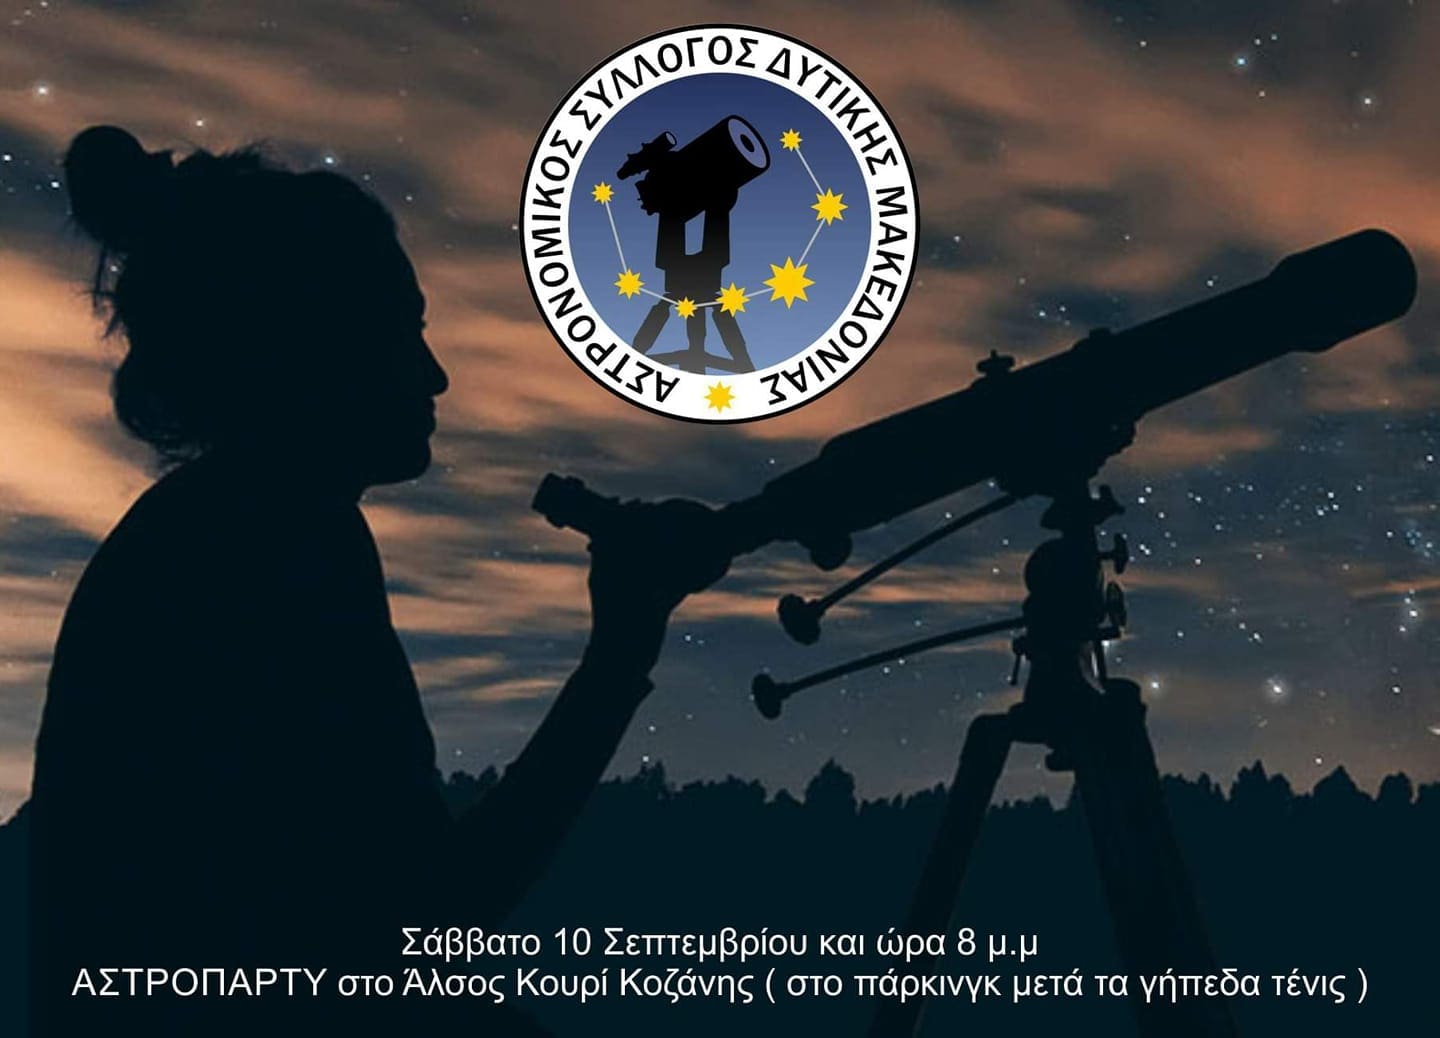 Αστρονομικός Σύλλογος Δυτικής Μακεδονίας: ΑΣΤΡΟΠΑΡΤΥ στο Άλσος Κουρί Κοζάνης